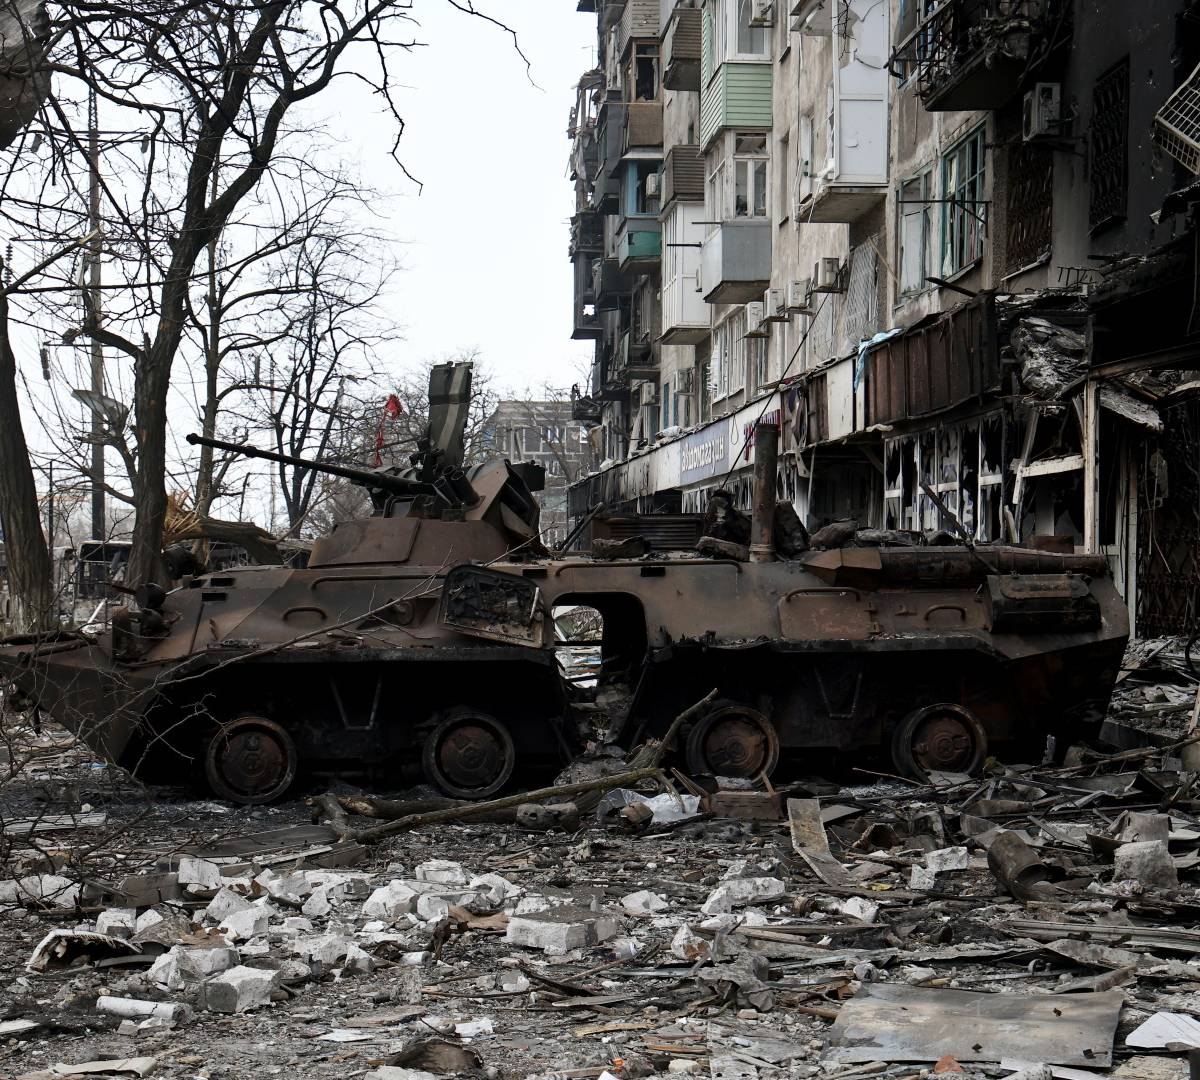 Прекратить геноцид со стороны киевского режима политпутем невозможно